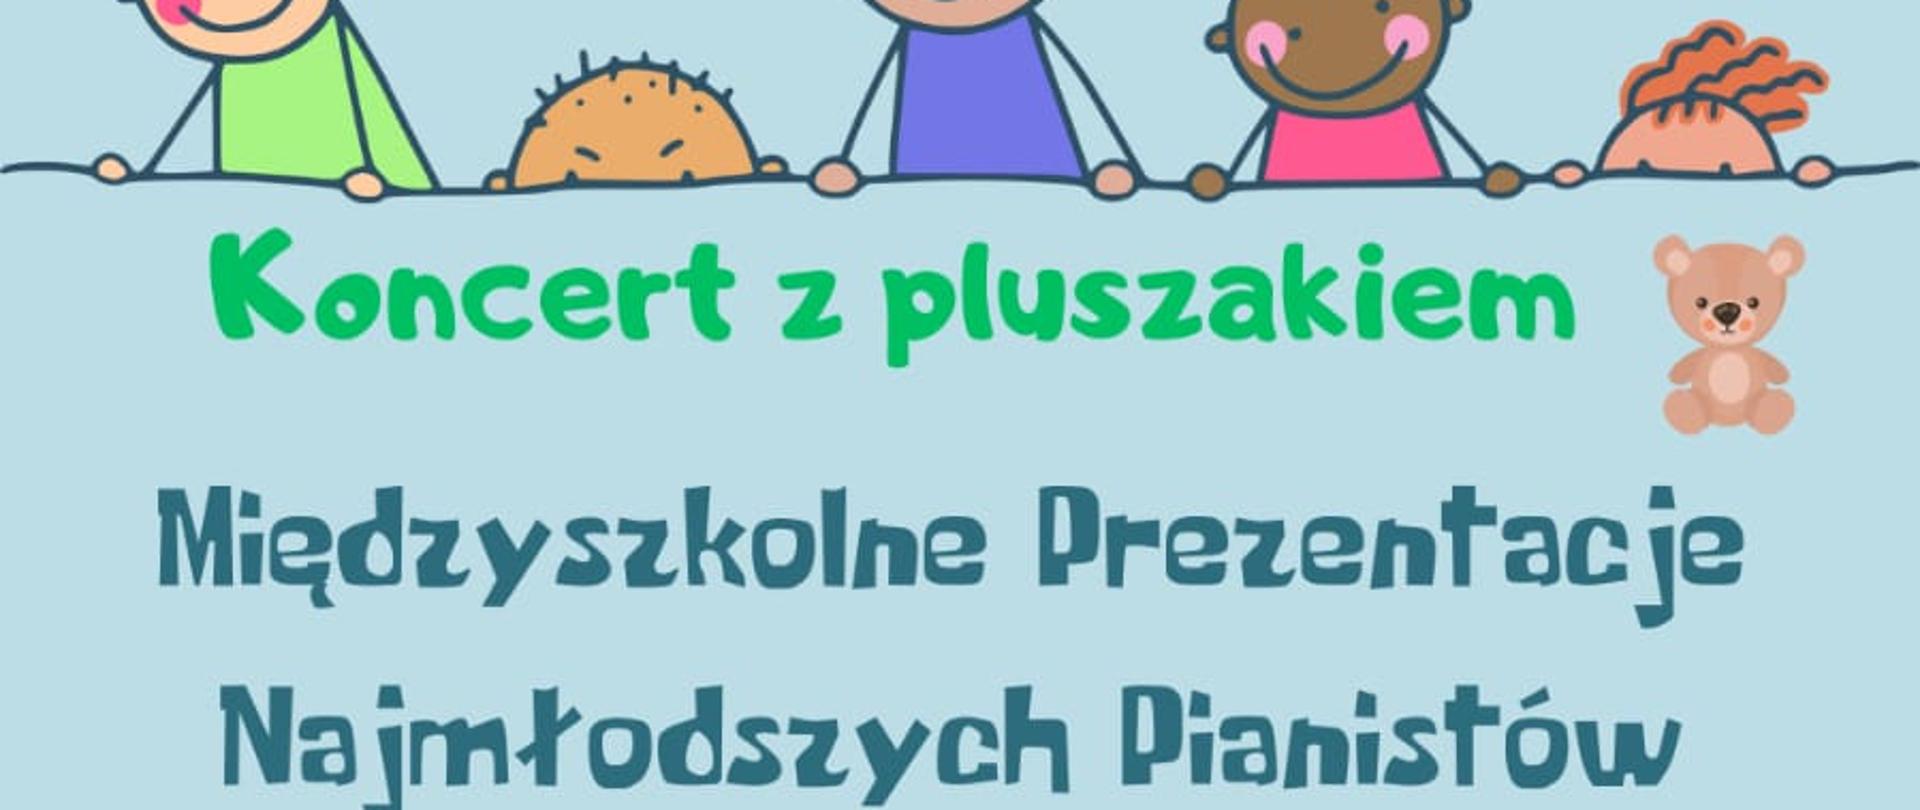 Międzyszkolne Prezentacje Najmłodszych Pianistów
"Koncert z pluszakiem"